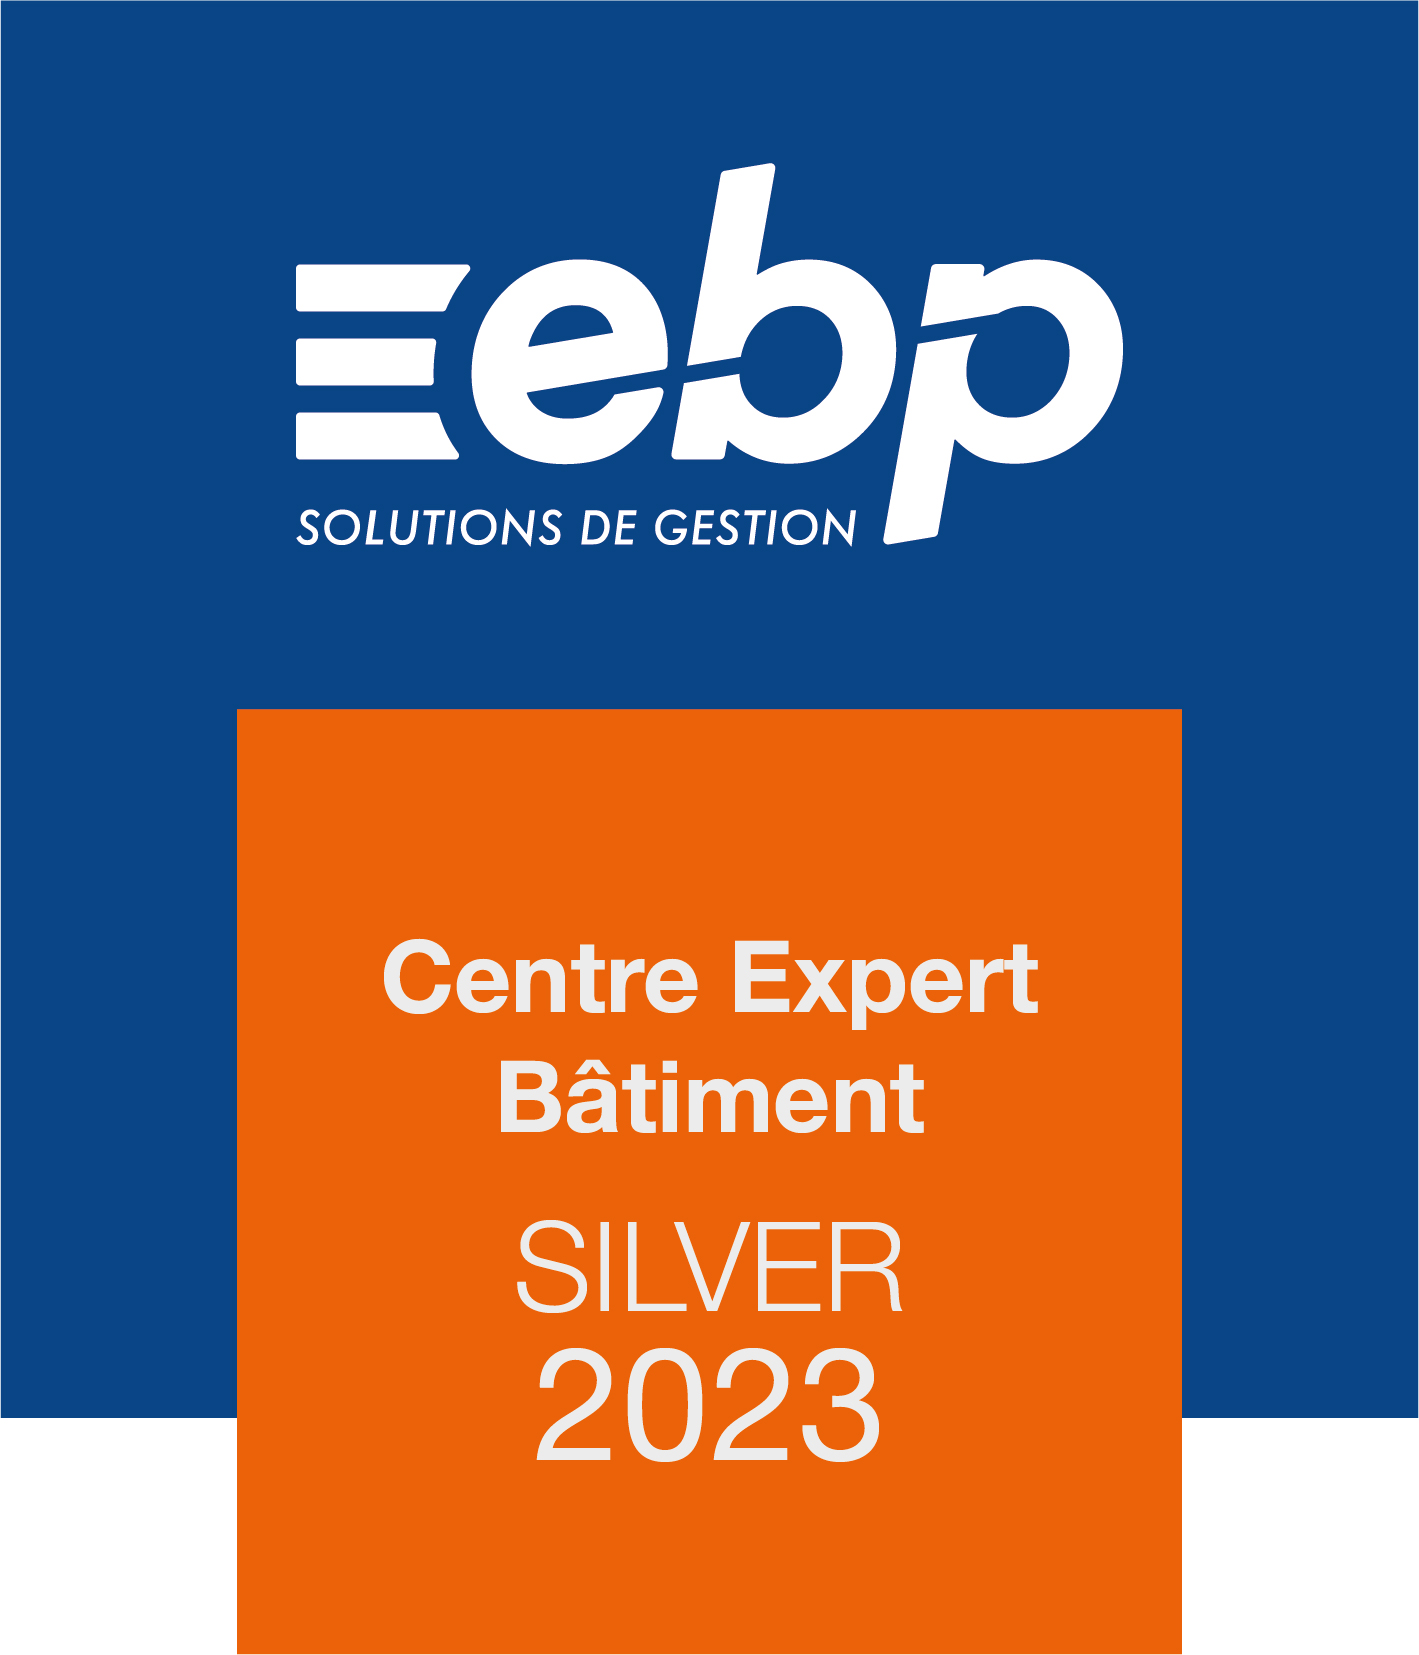 Centre de compétence Expert Bâtiment Silver 2023 - Logiciel EBP, ACE distributeur revendeur certifié centre expert Gold 974 